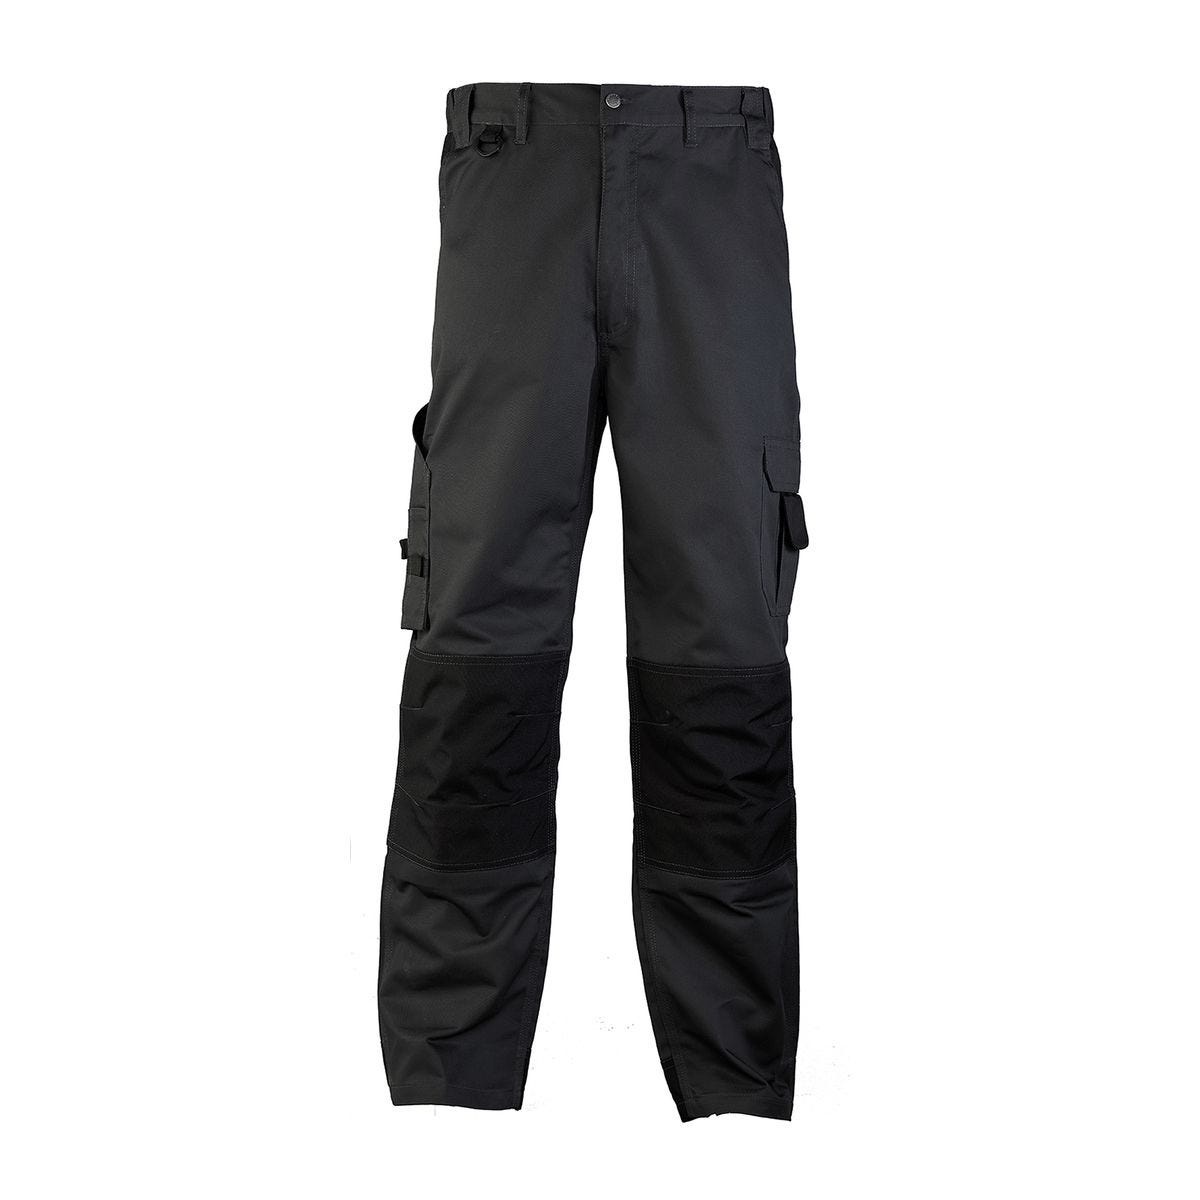 Pantalon CLASS gris foncé - COVERGUARD - Taille L 0